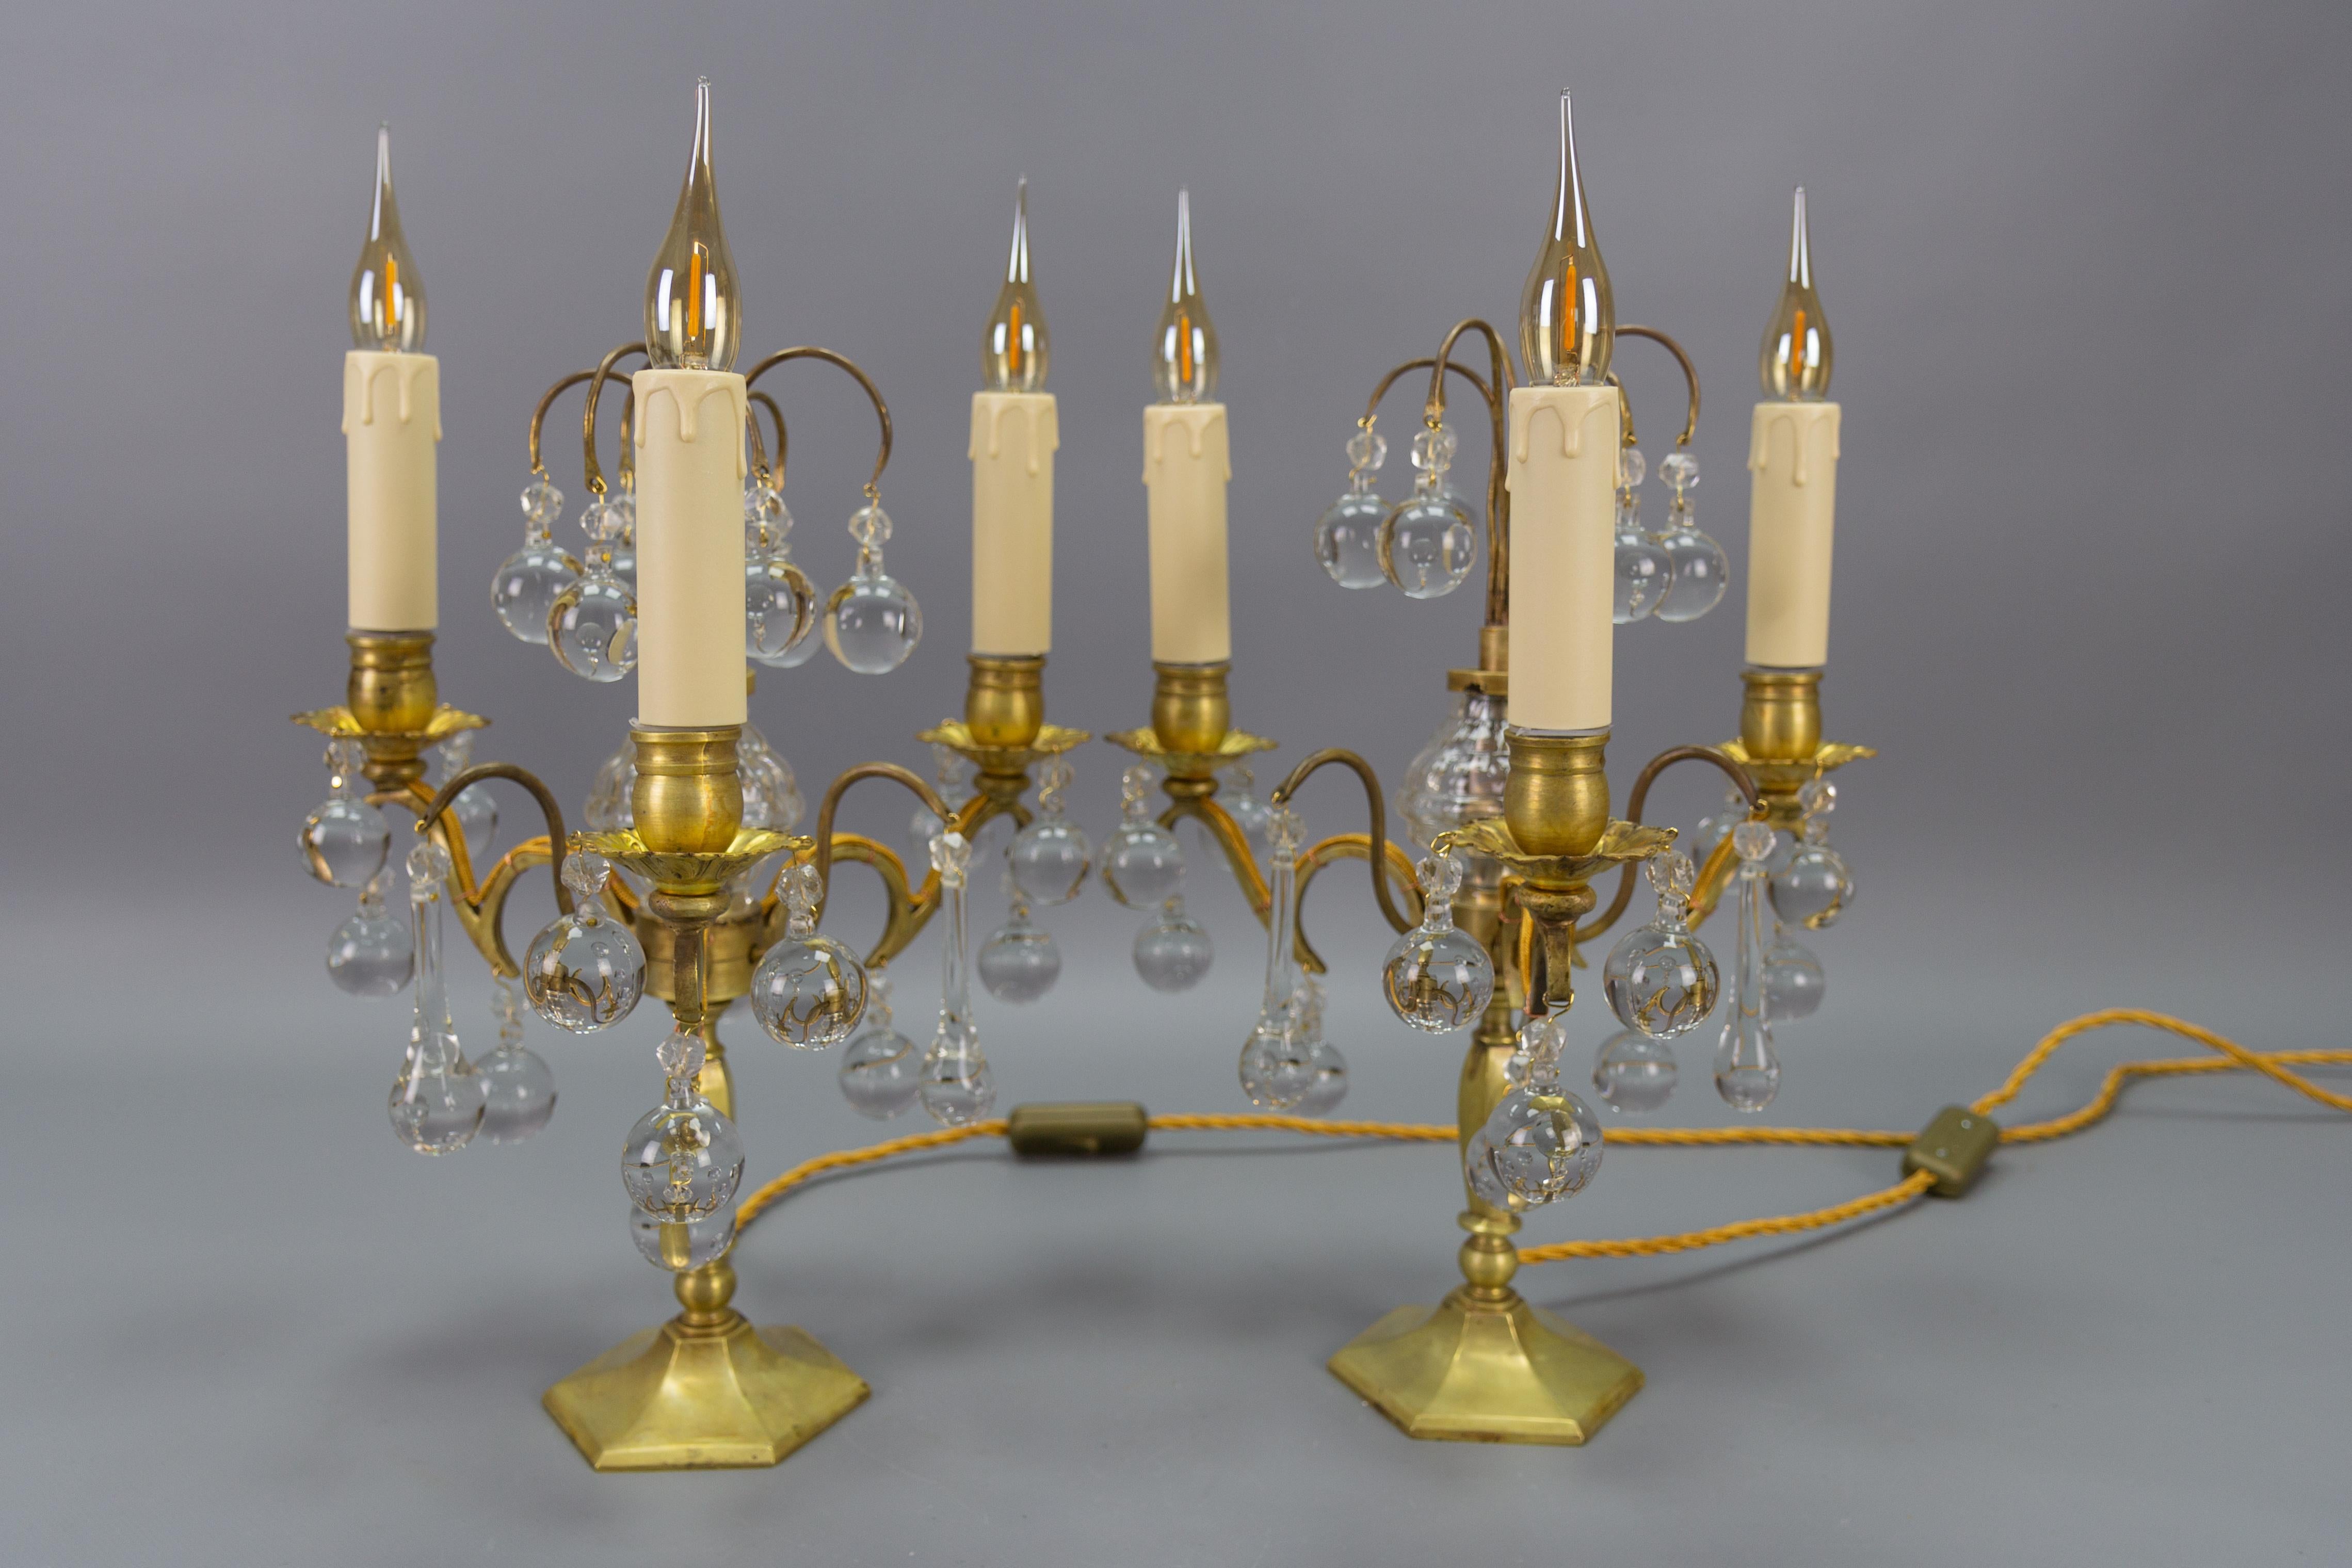 Paire de lampes de table girandoles à trois lumières en laiton et cristal, d'environ 1900.
Cette élégante paire de lampes candélabres ou girandoles françaises anciennes est en laiton et est décorée de cristaux - boules, cristaux en forme de goutte